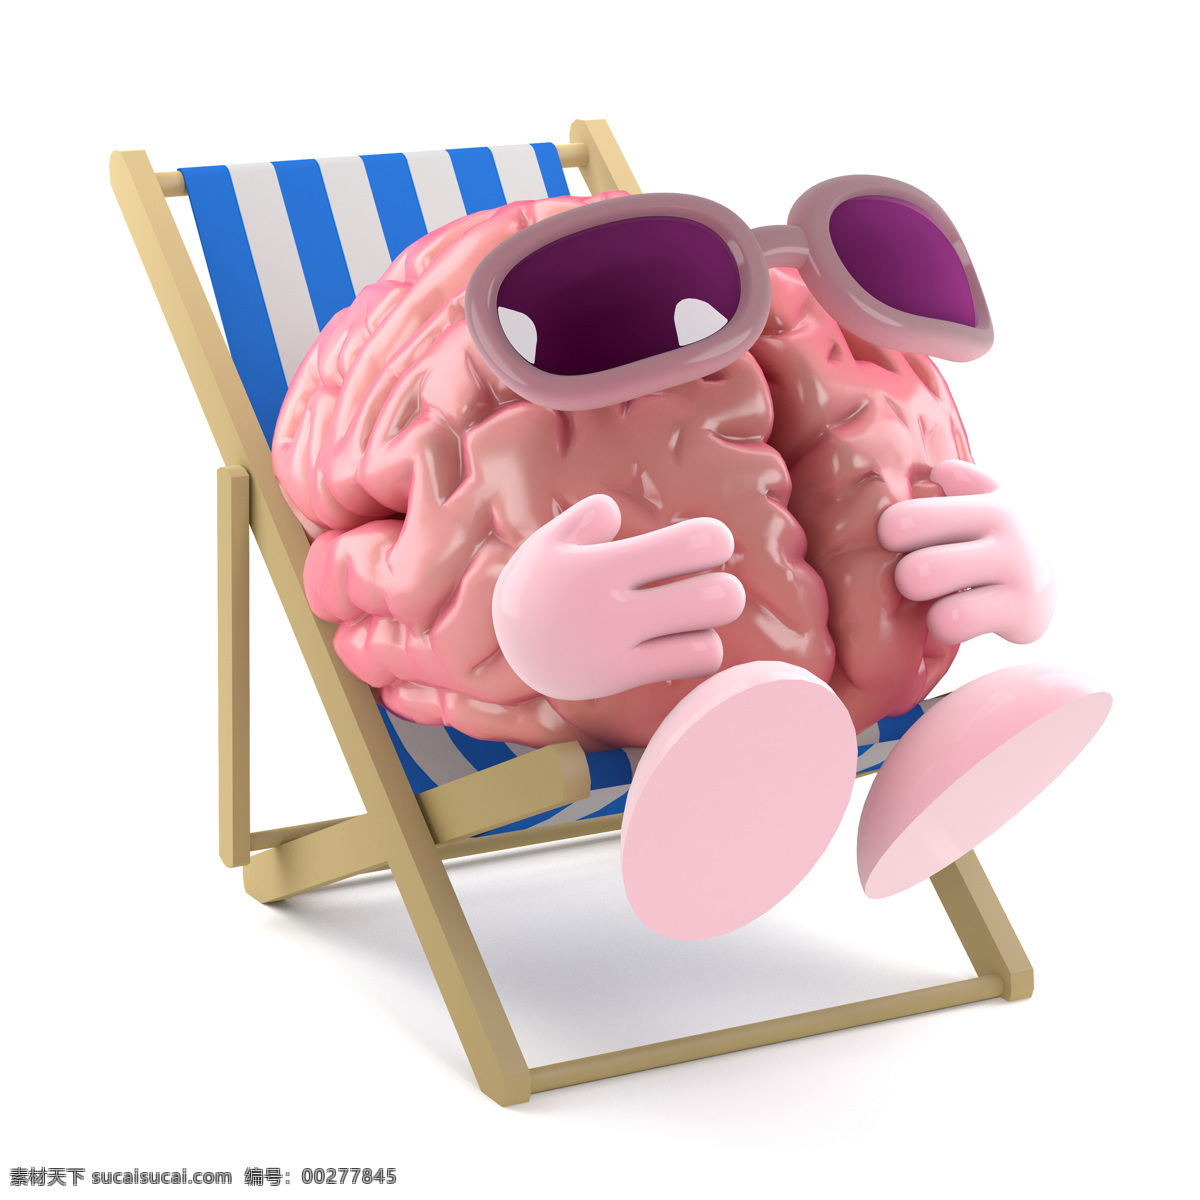 大脑 漫画 晒太阳 人类大脑 大脑漫画 大脑设计 卡通大脑 大脑人物 虚拟人物 儿童卡通 卡通动画 脑细胞 脑容量 太阳镜 动漫动画